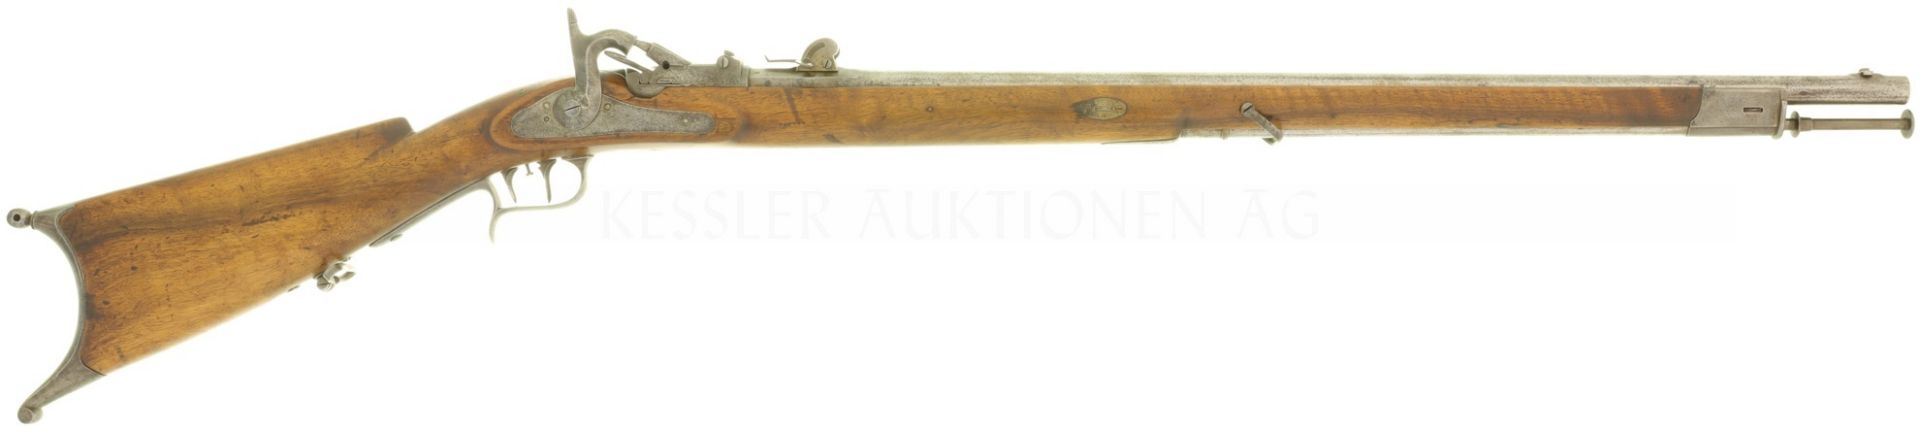 Scharfschützengewehr, Feldstutzer 1851/67, Kal. 10.4mmRF